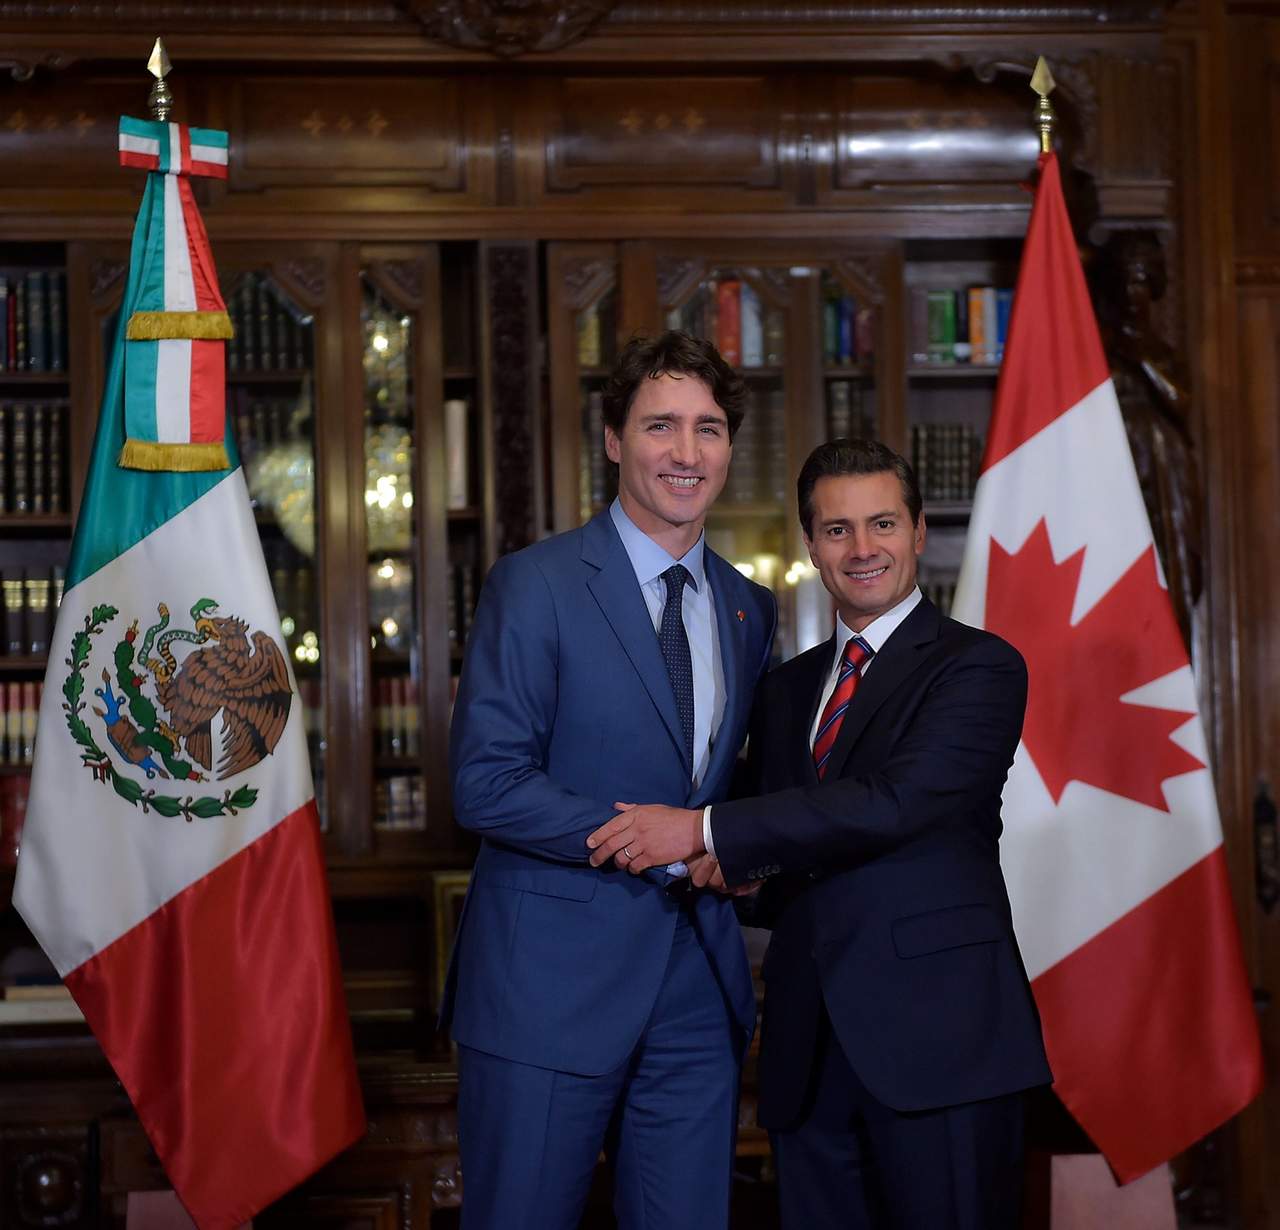 Ambos países son el tercer socio comercial del otro, pero en materia agrícola, México es el segundo socio de Canadá, de acuerdo con fuentes oficiales. (ARCHIVO)